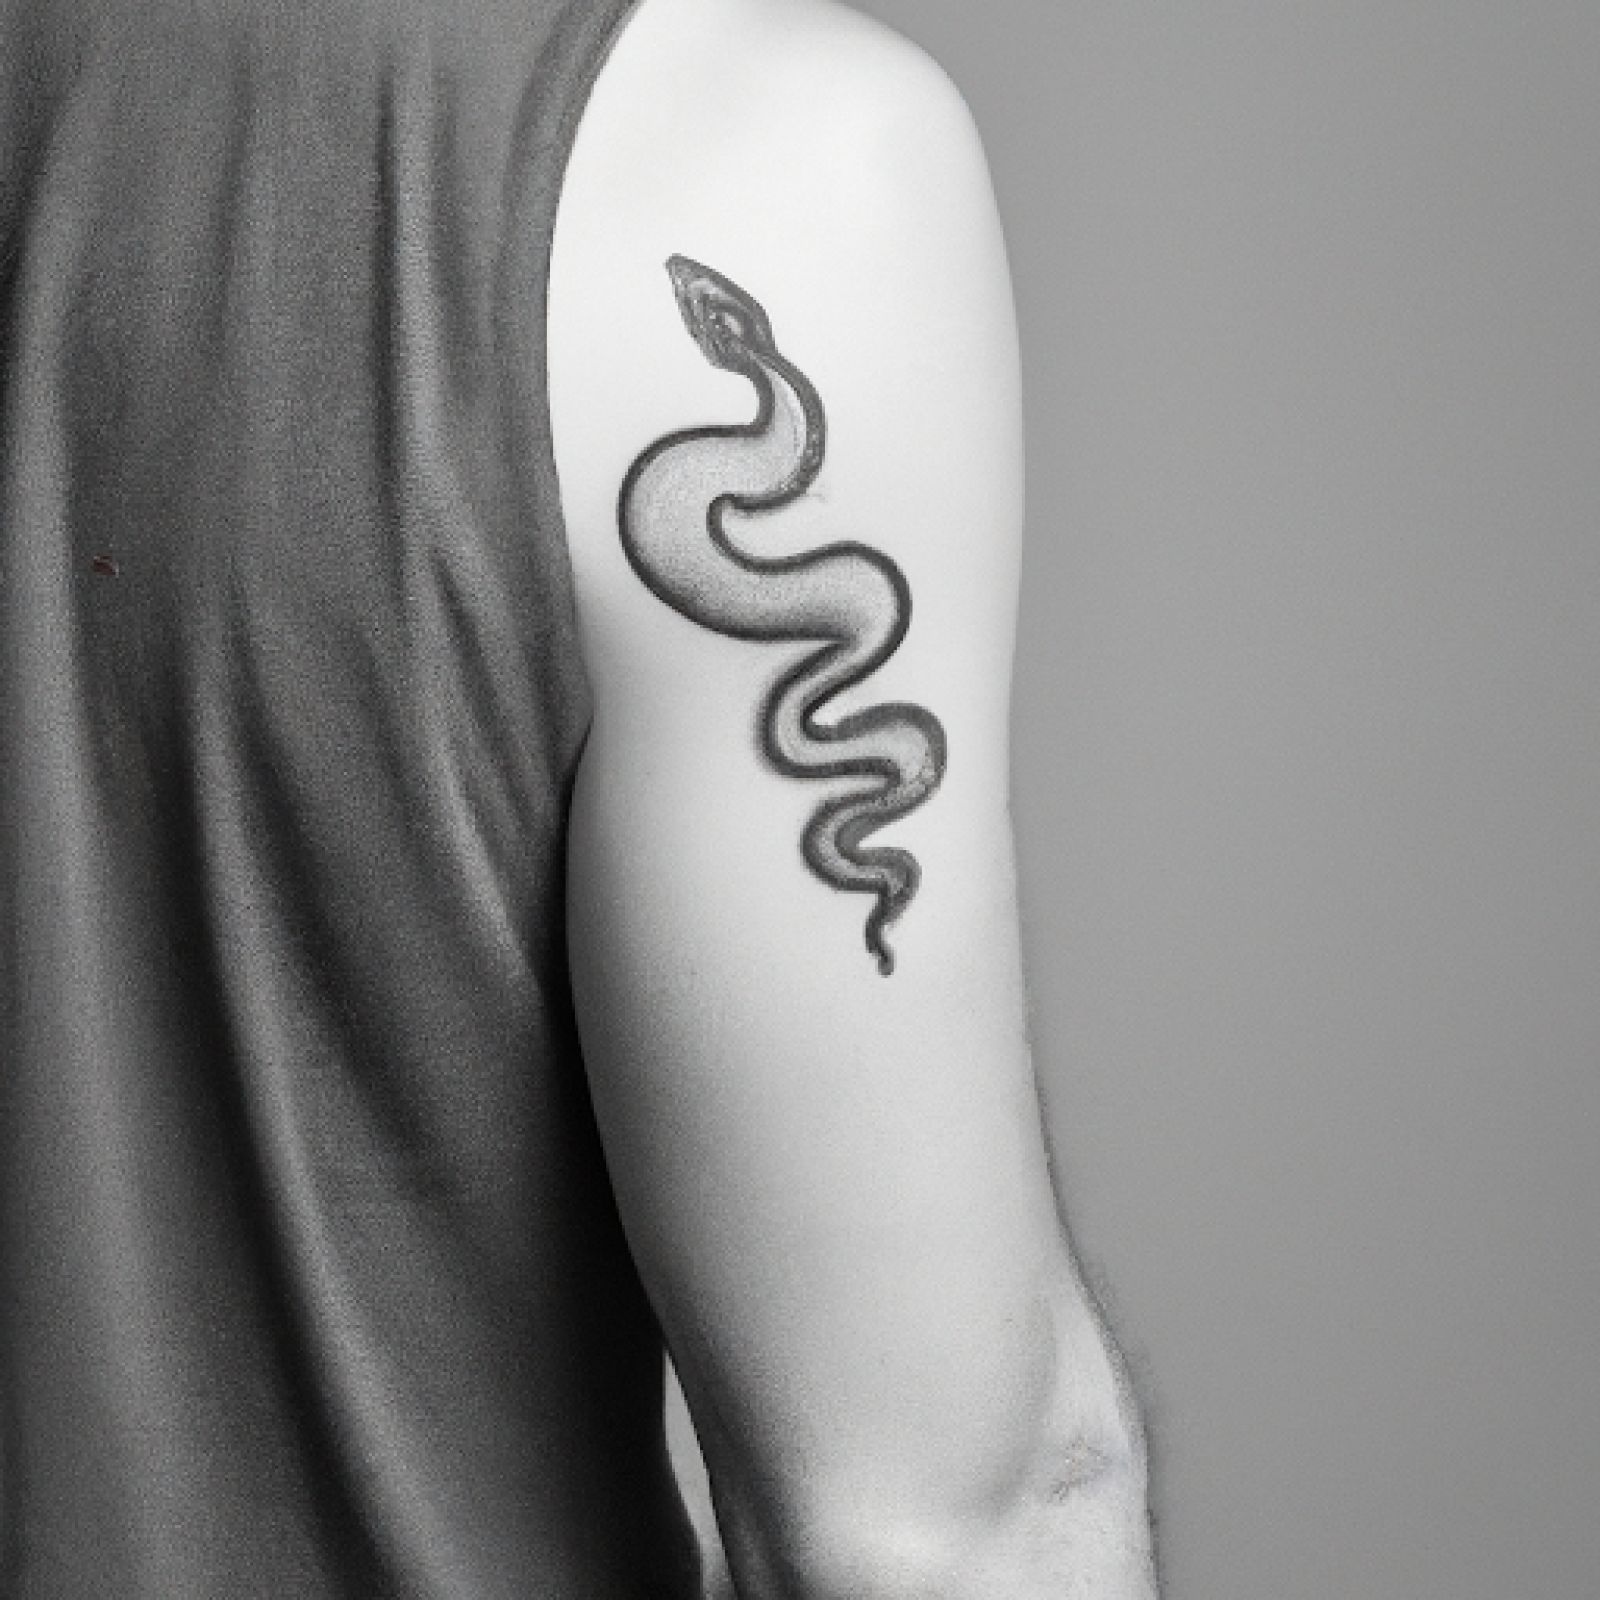 Snake tattoo on shoulder for men